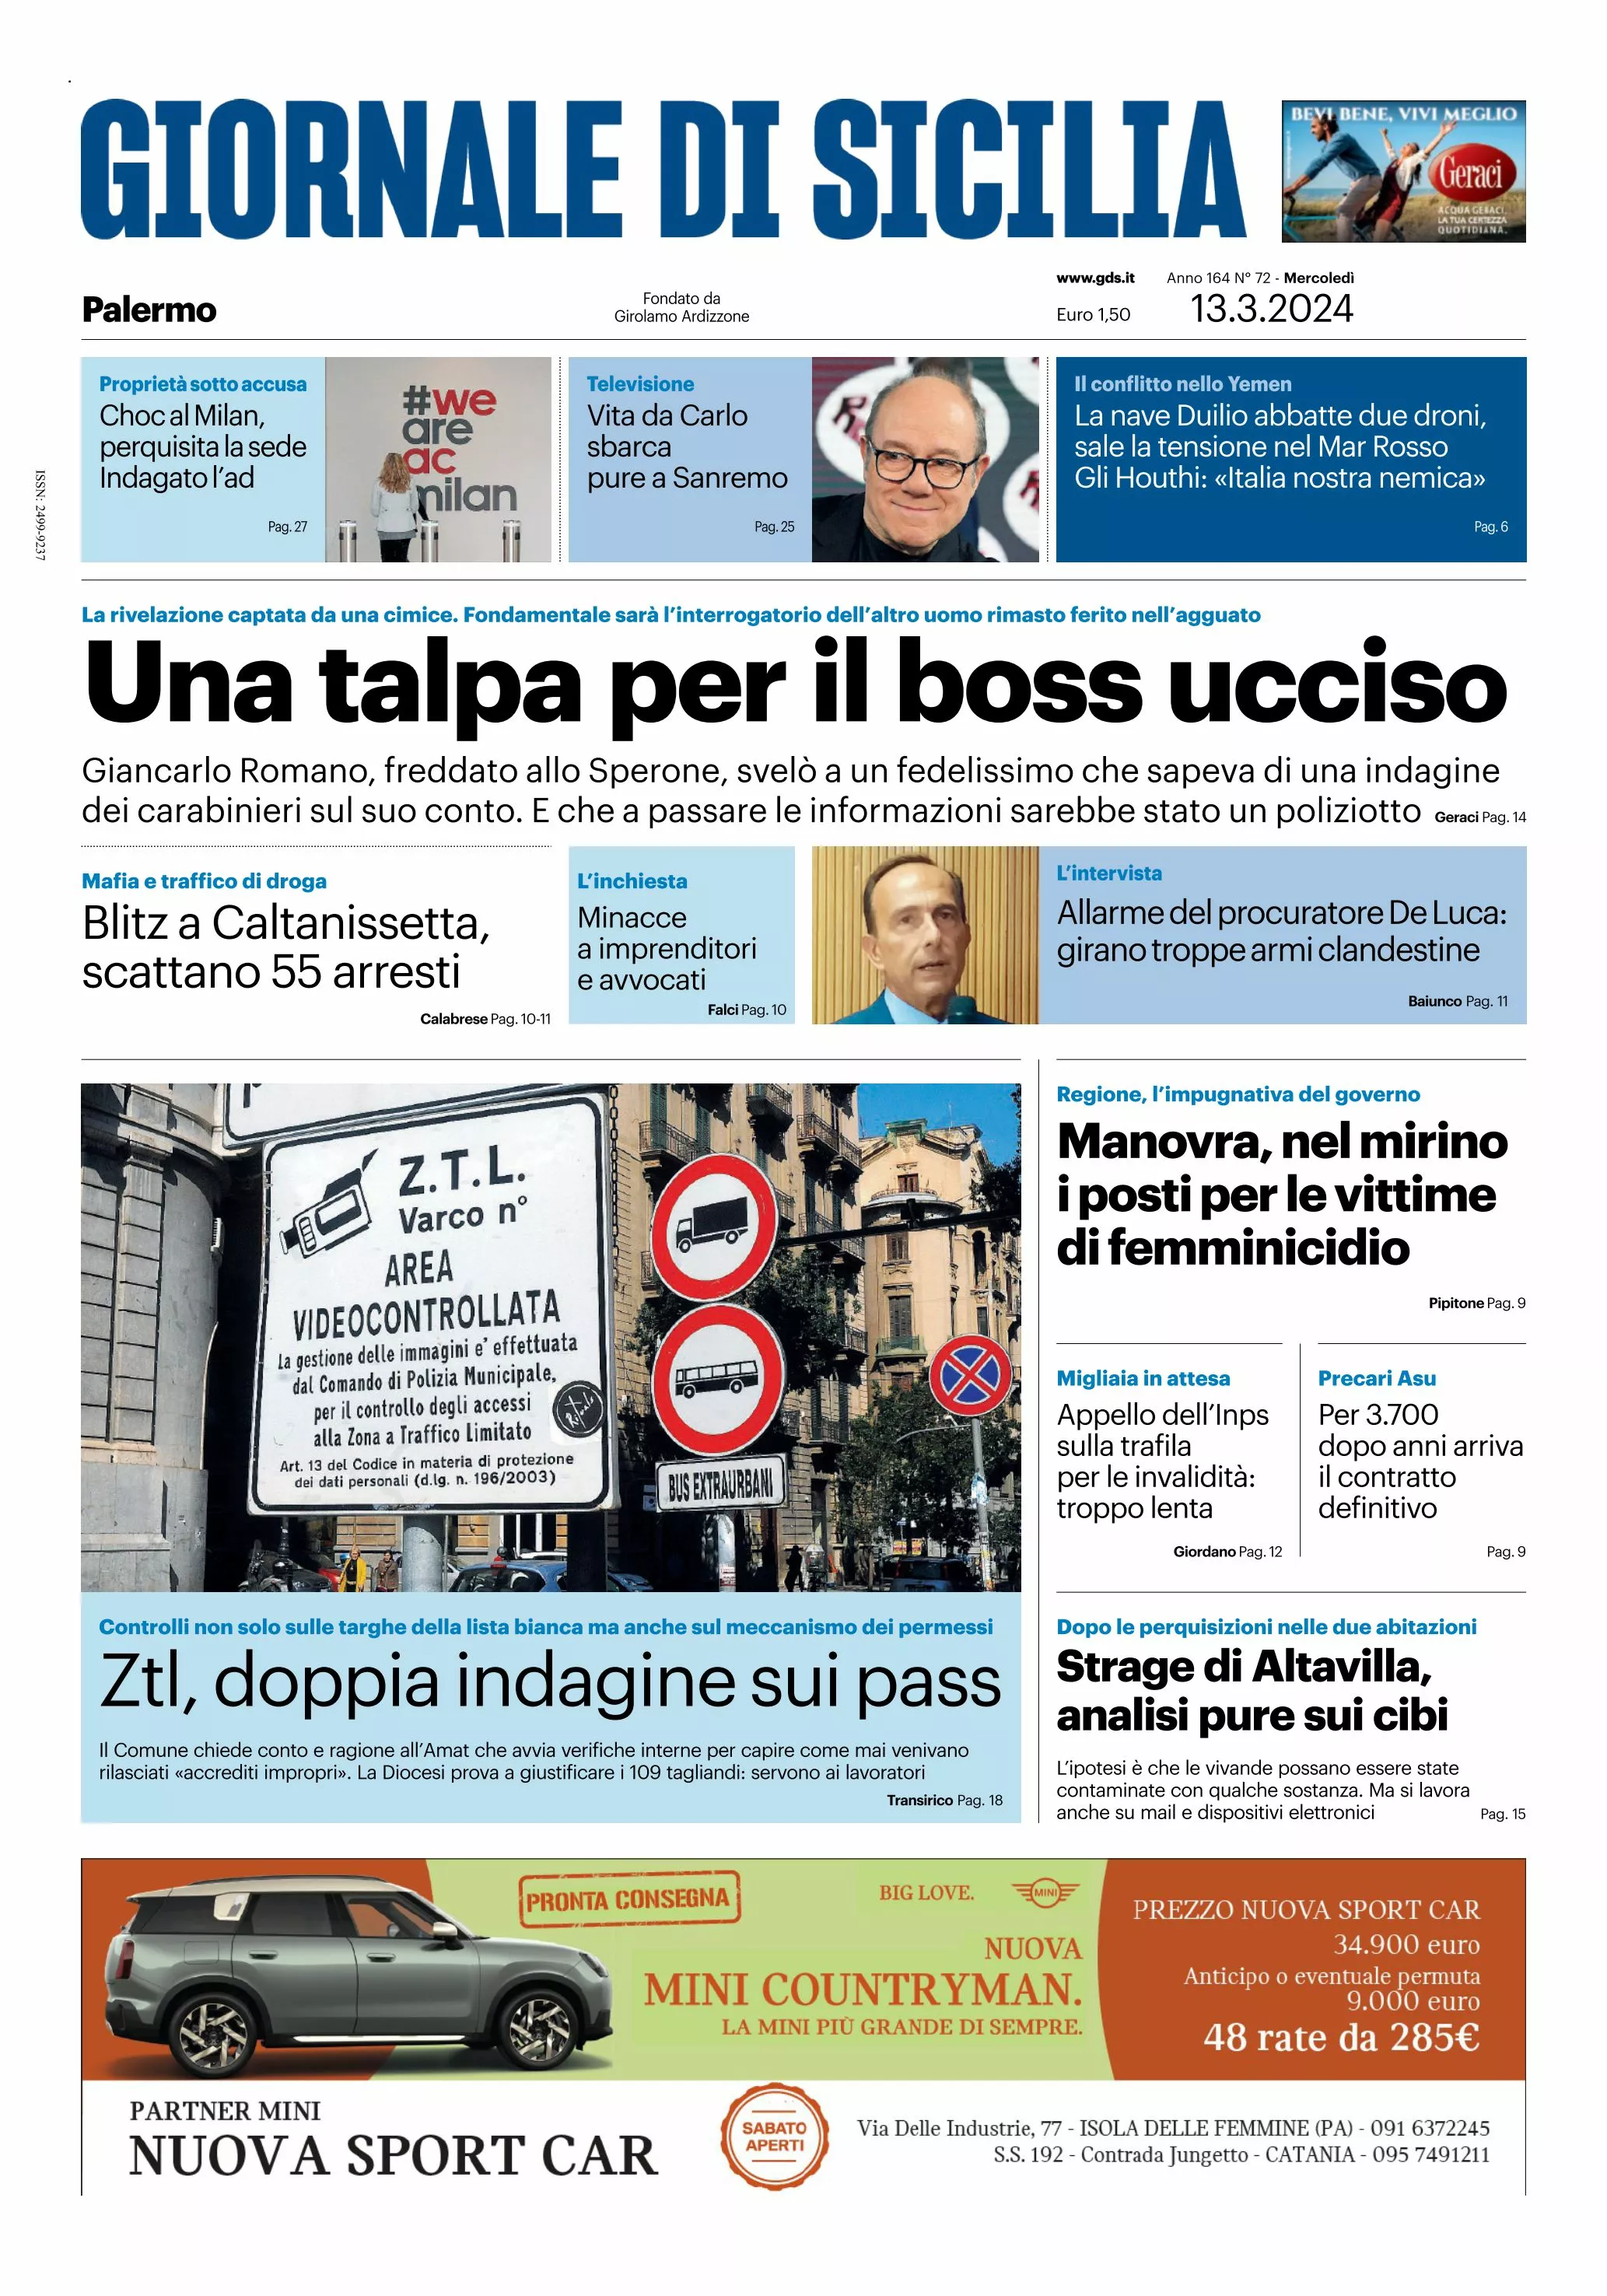 Prima-pagina-giornale-di-sicilia-edizione-palermo-di-oggi-13-03-24